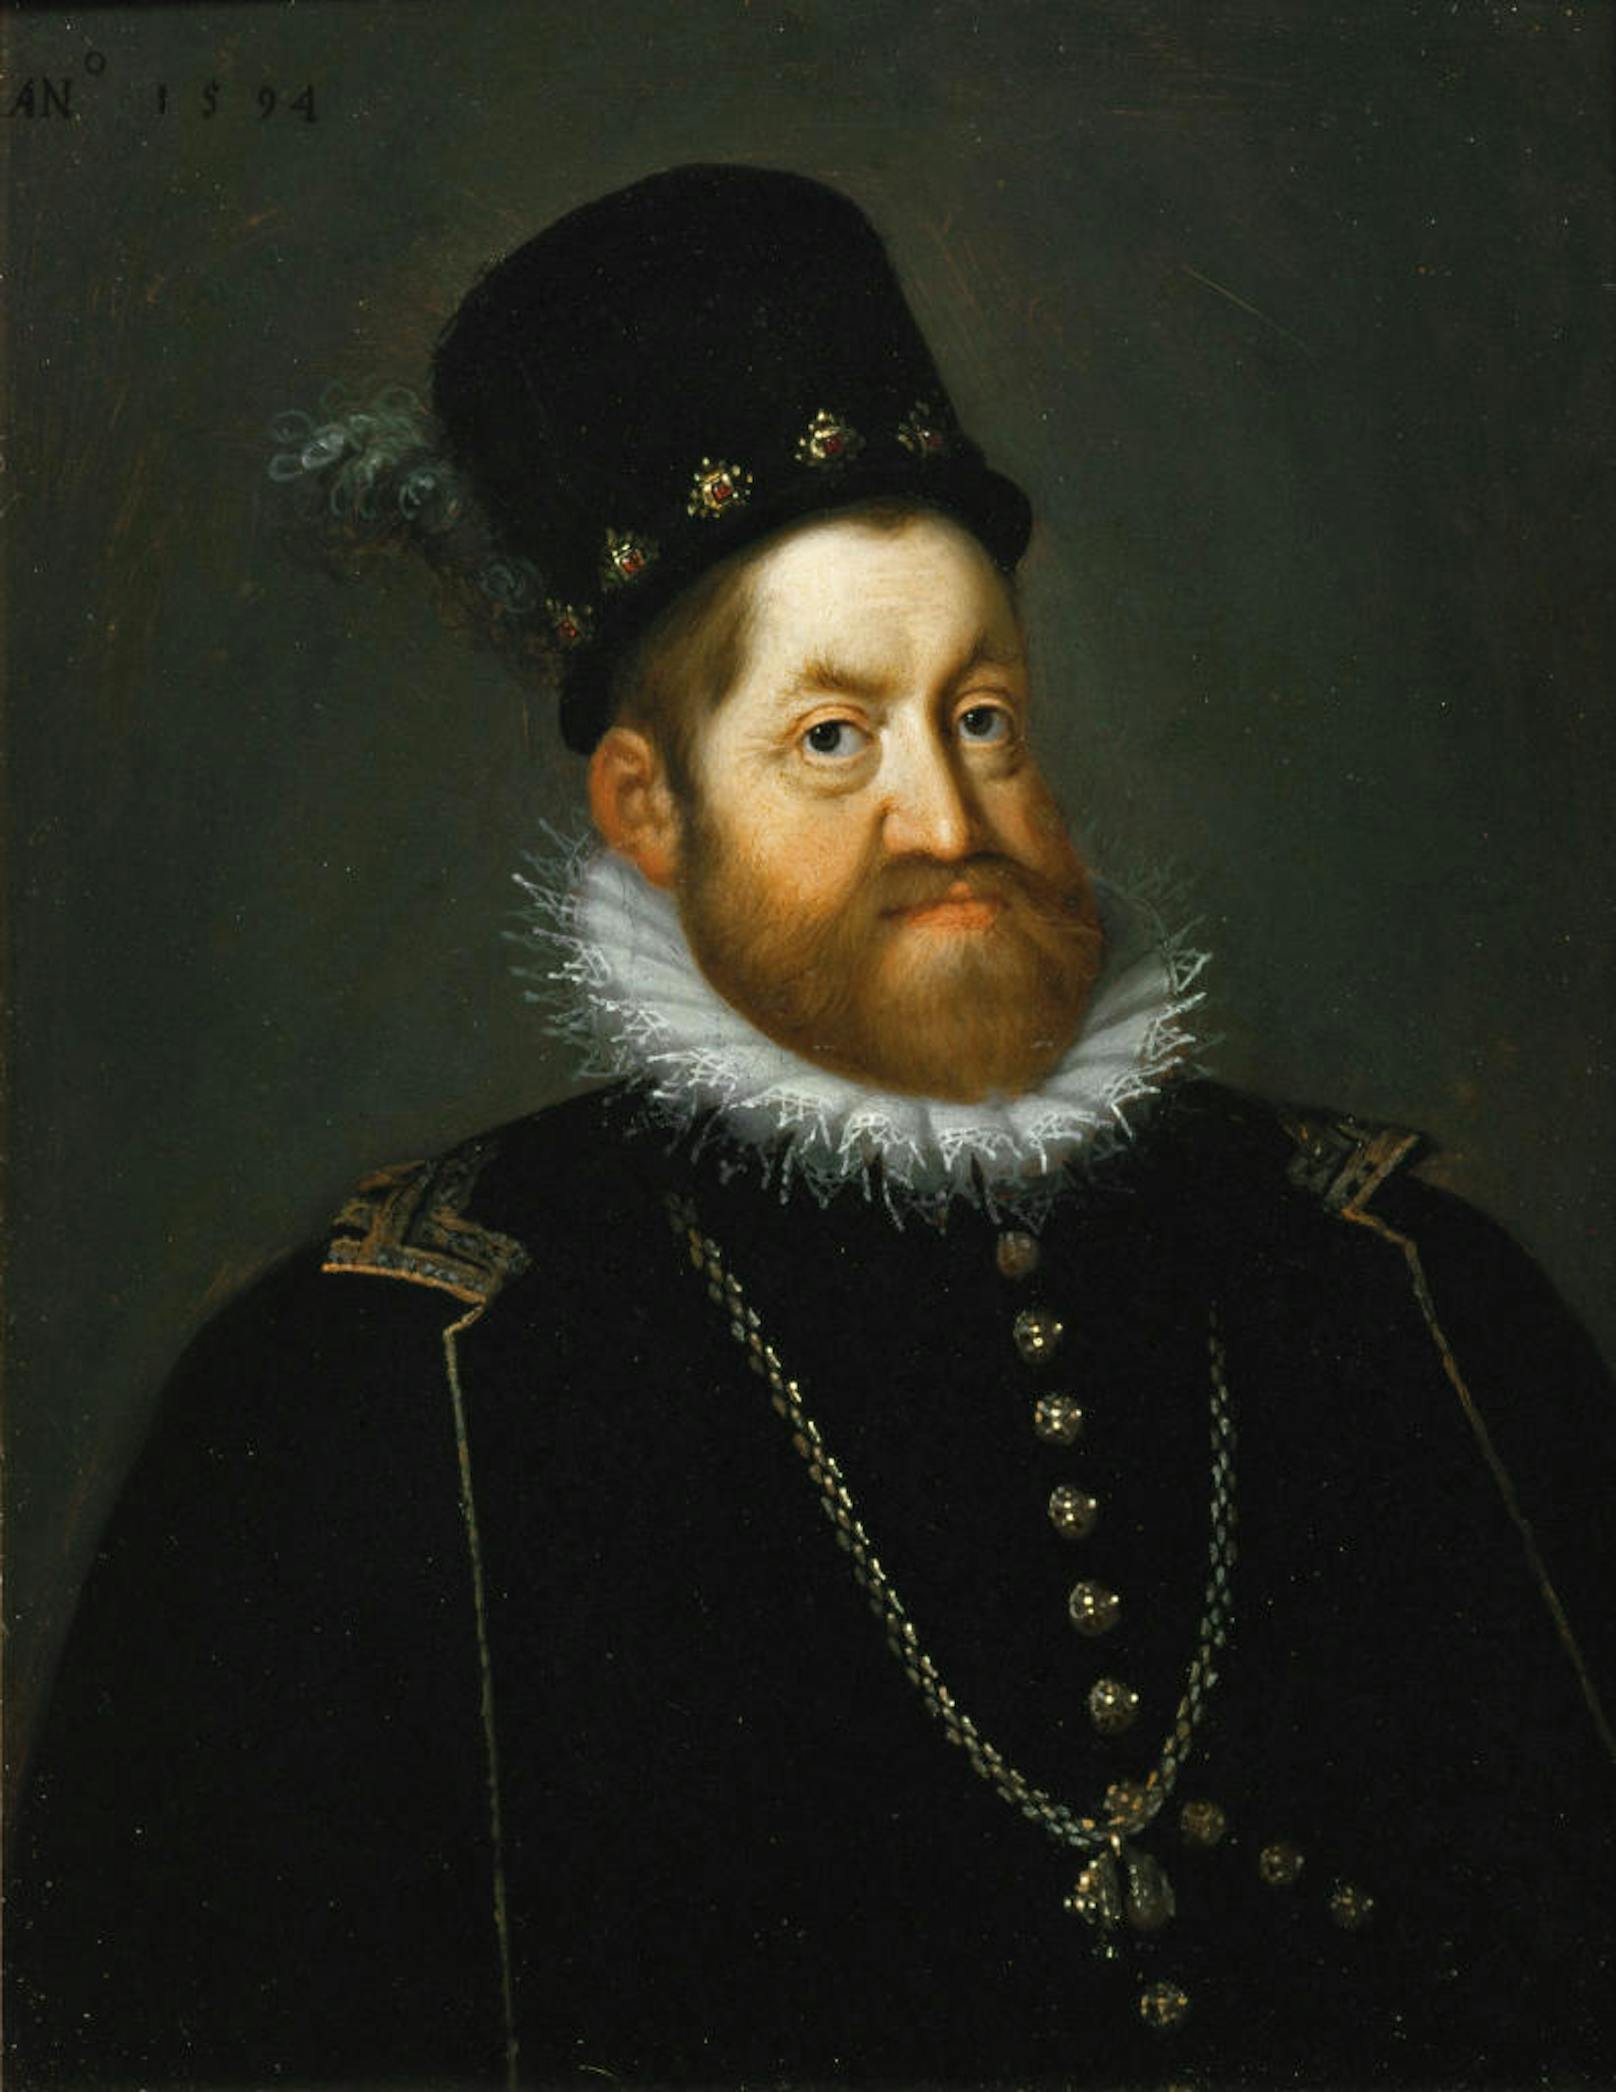 Kaiser Rudolf II. (1552 - 1612) zeigte ebenfalls das ausgeprägte Habsburger Kinn. Er verlegte die Residenz nach Prag und förderte Kunst und Wissenschaften. Sein Reich regierte er kaum selbst, weshalb er schließlich von seinem Bruder entmachtet wurde.